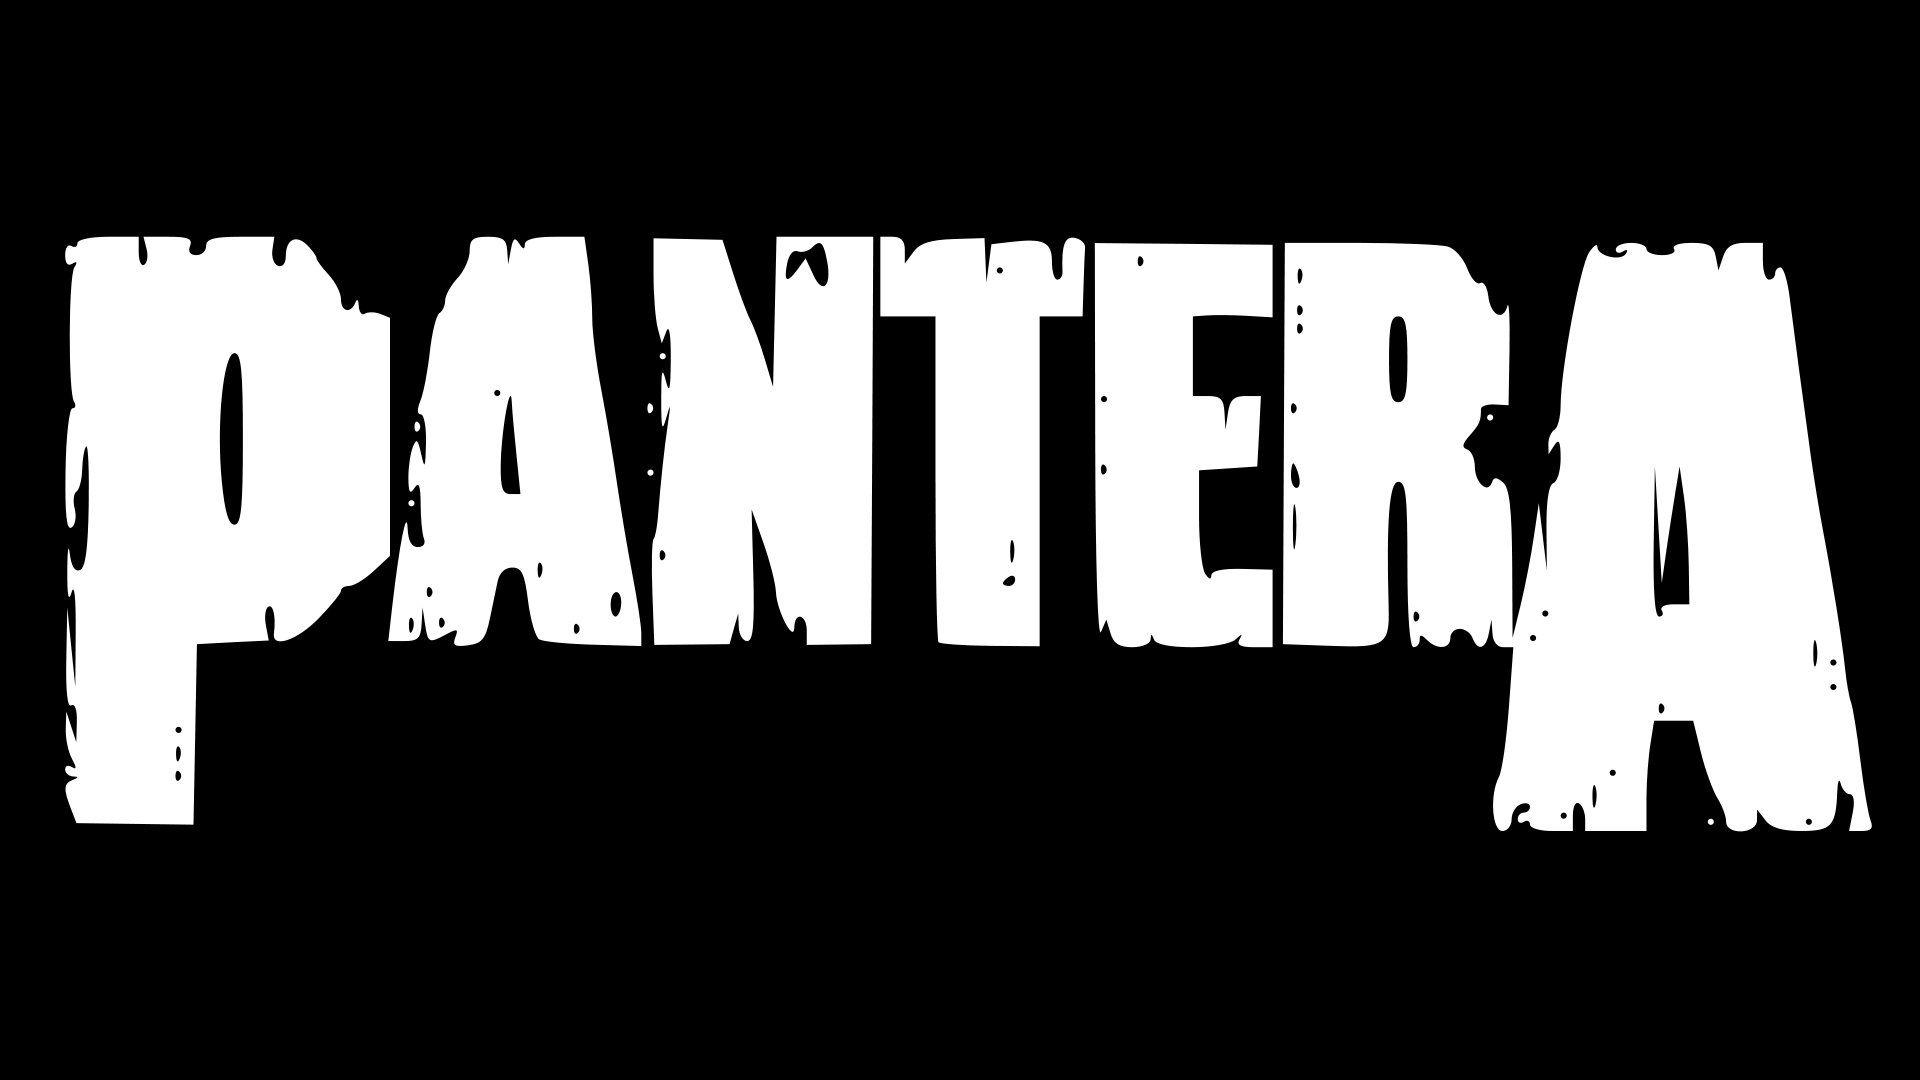 2013 New Rock Band Logo - Rumors of 2013 Pantera Reunion Picking Up Steam | Music | Metallica ...